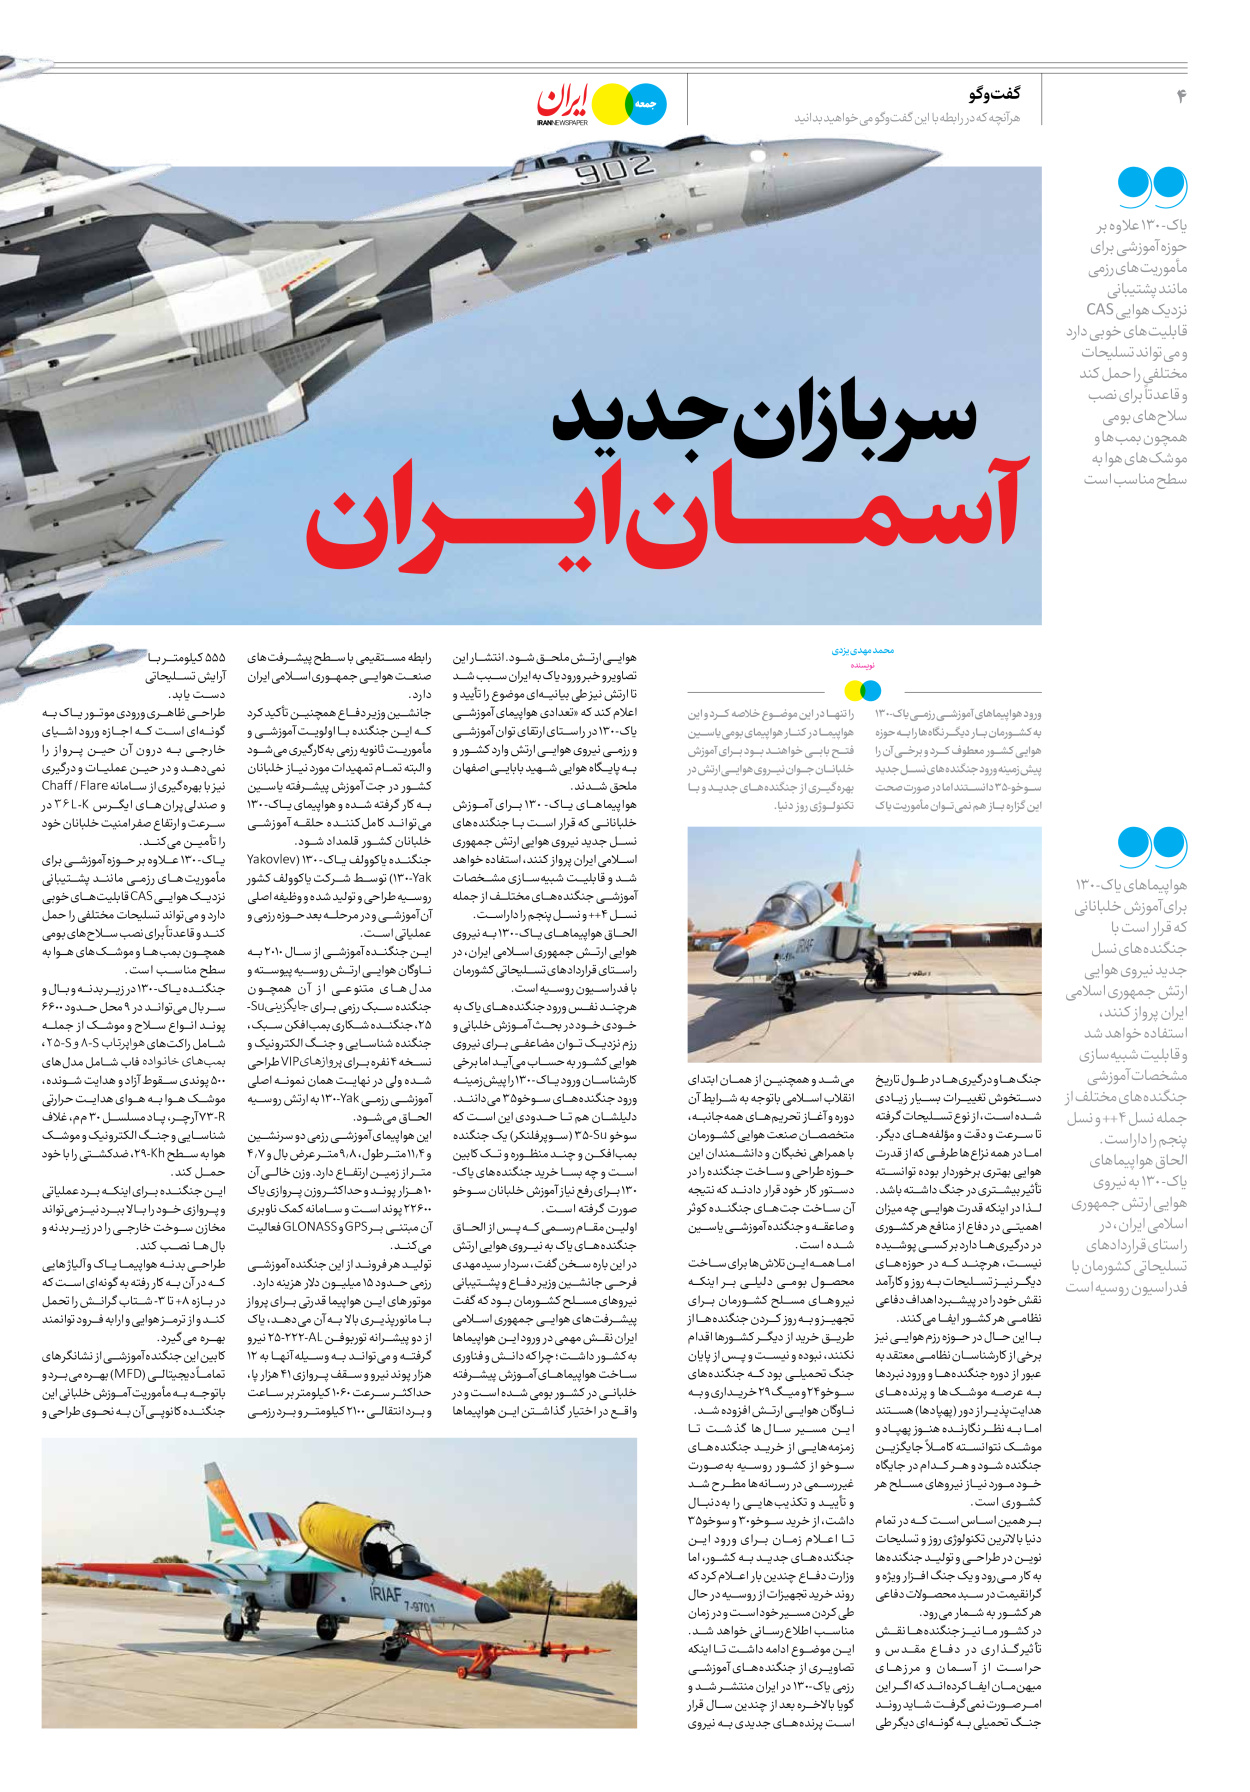 روزنامه ایران - ویژه نامه جمعه ۴۱ - ۳۰ شهریور ۱۴۰۲ - صفحه ۴